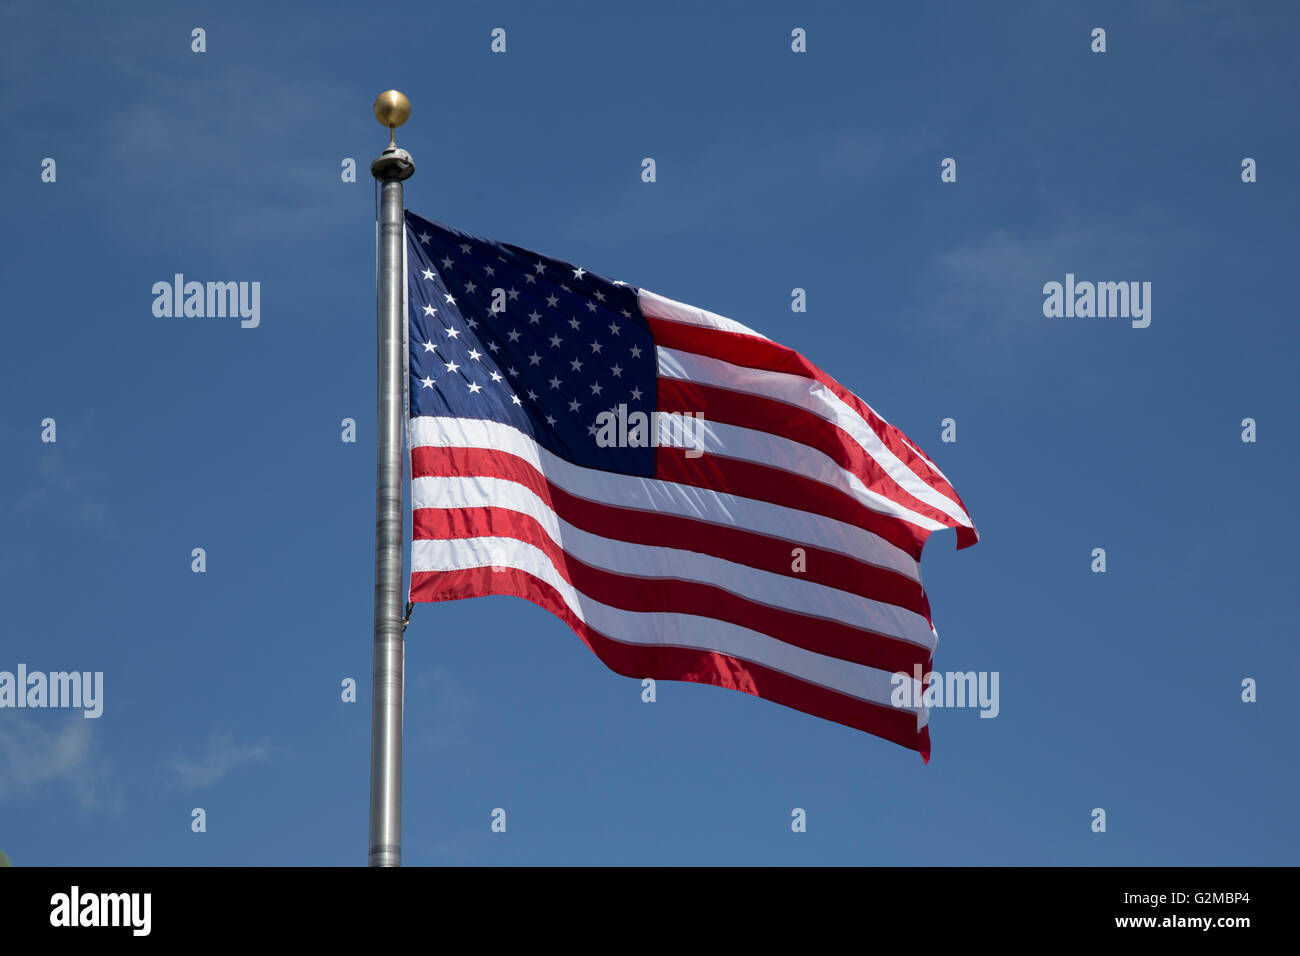 Unsere Flagge, die Vereinigten Staaten von Amerika Flagge, fliegen hoch am Himmel auf der USS Hornet, Alameda, Kalifornien Stockfoto